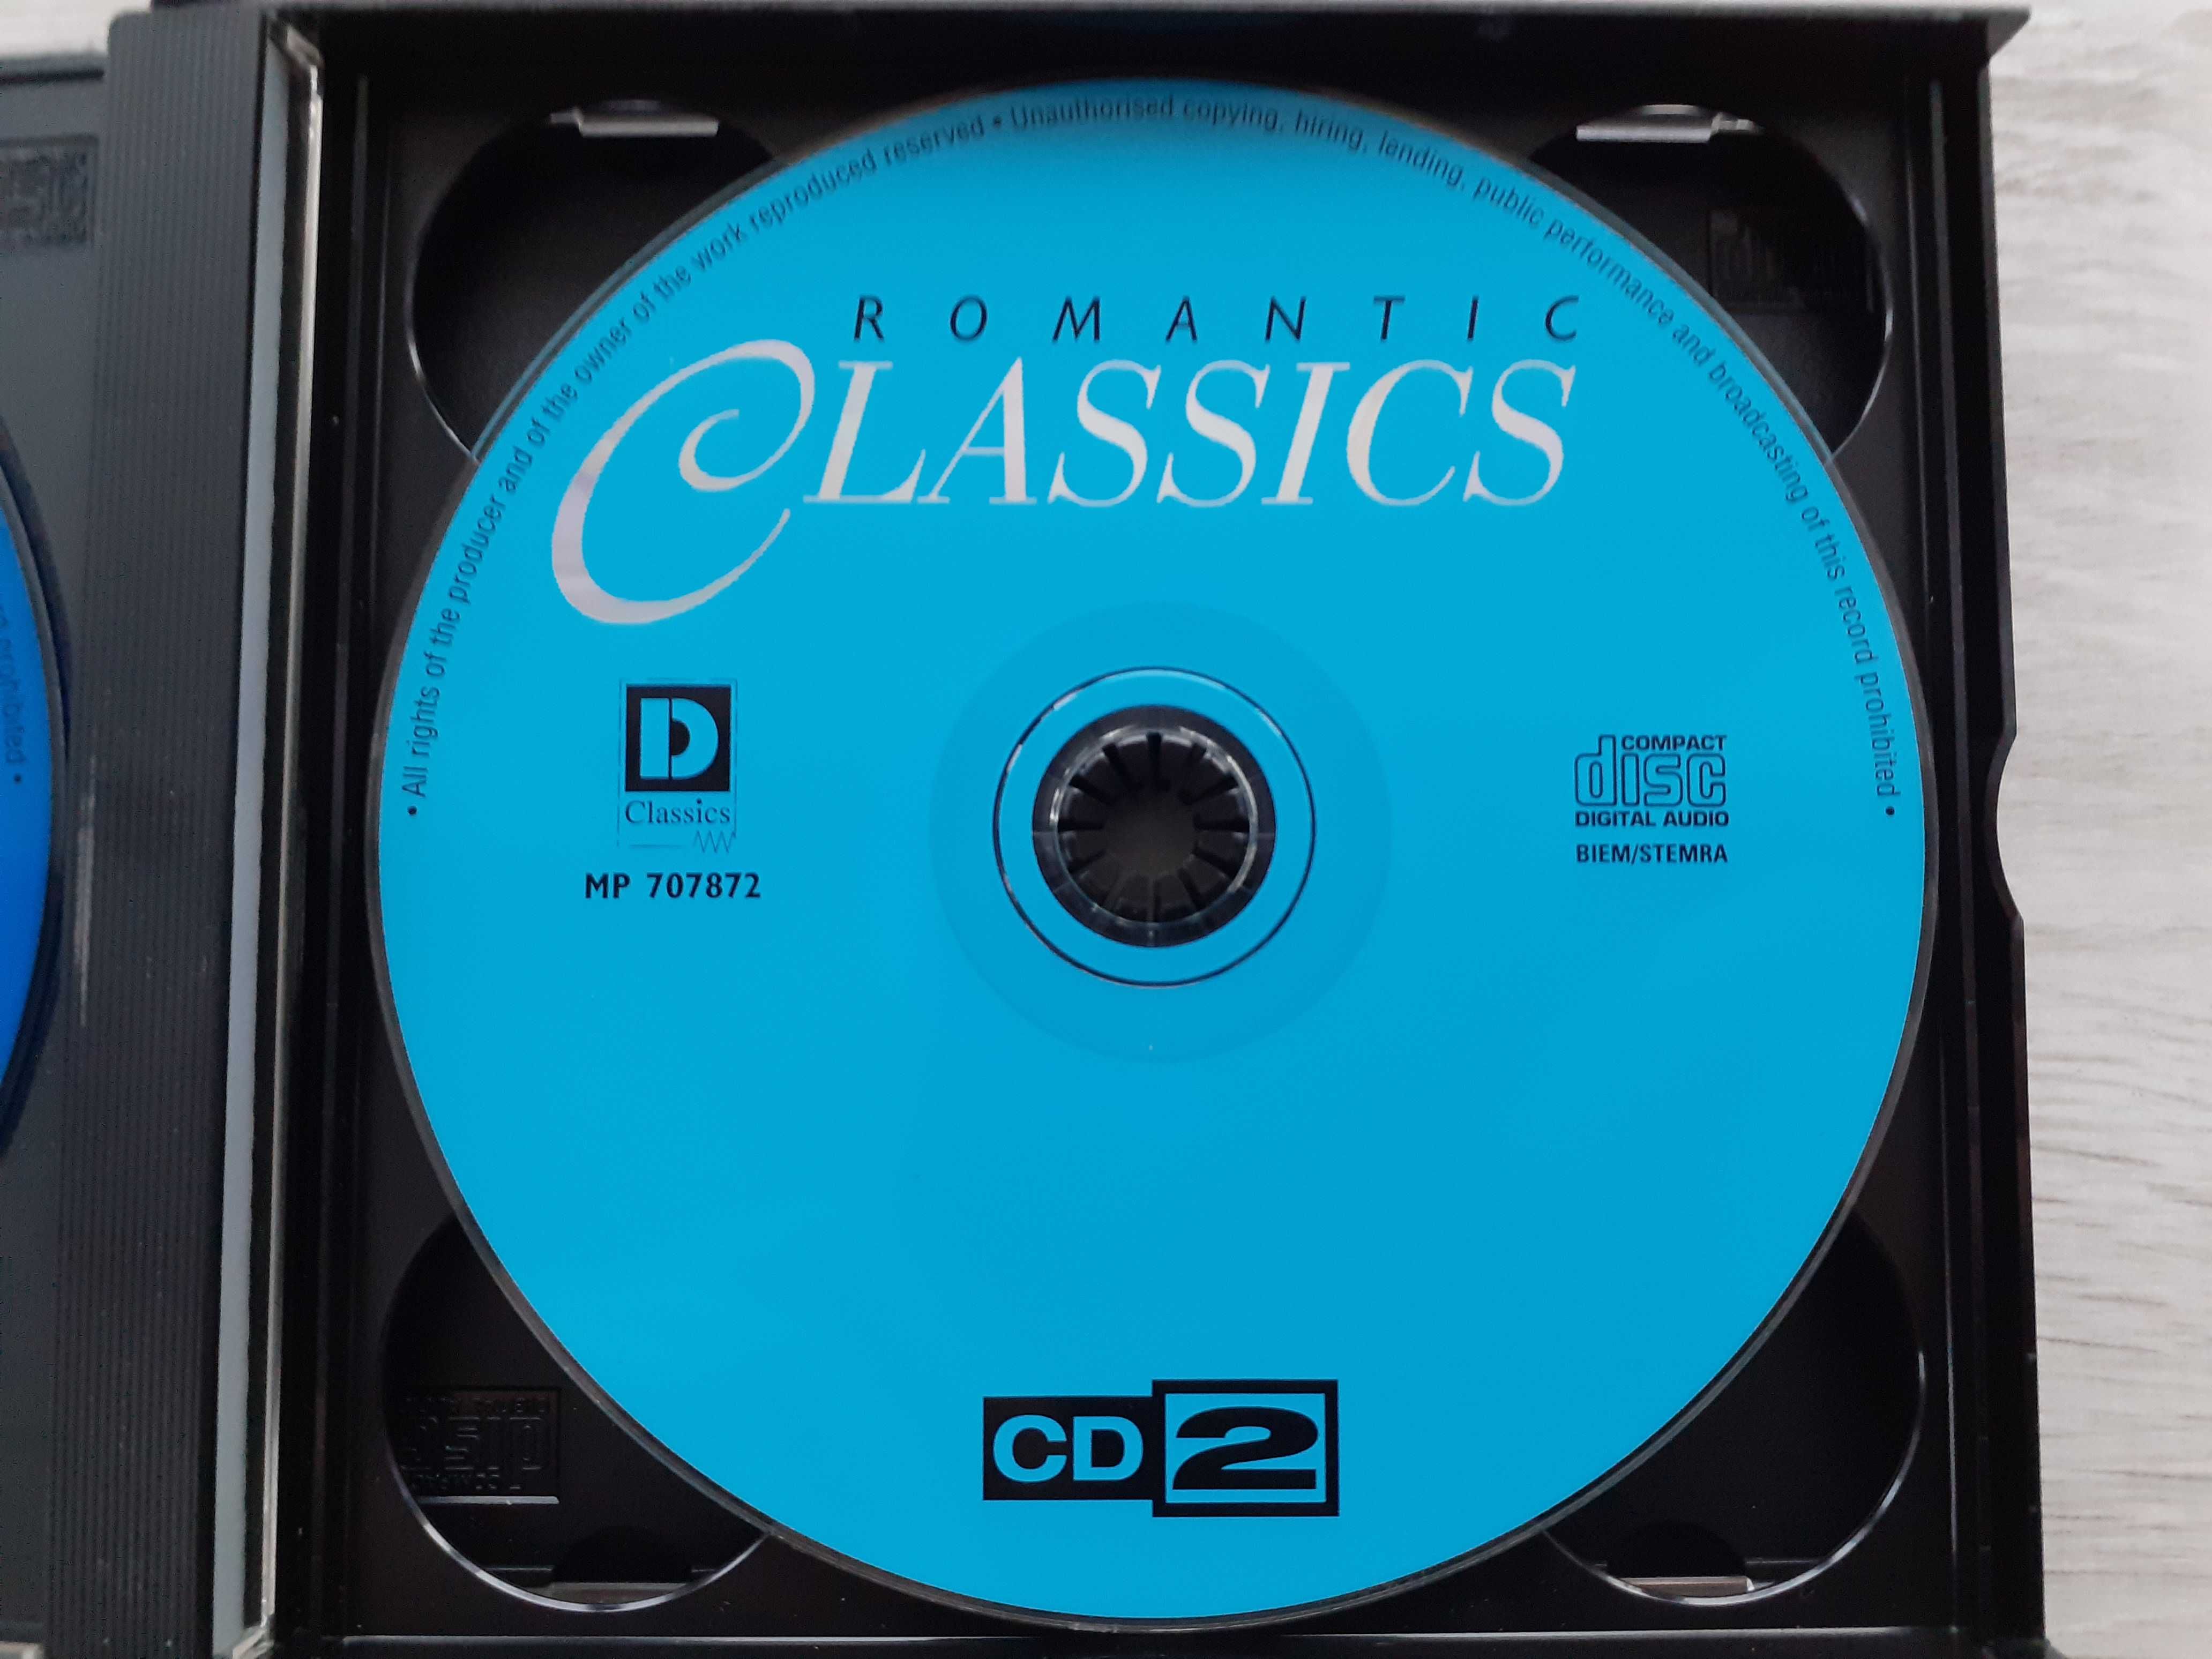 Romantic Classics 3 x CD